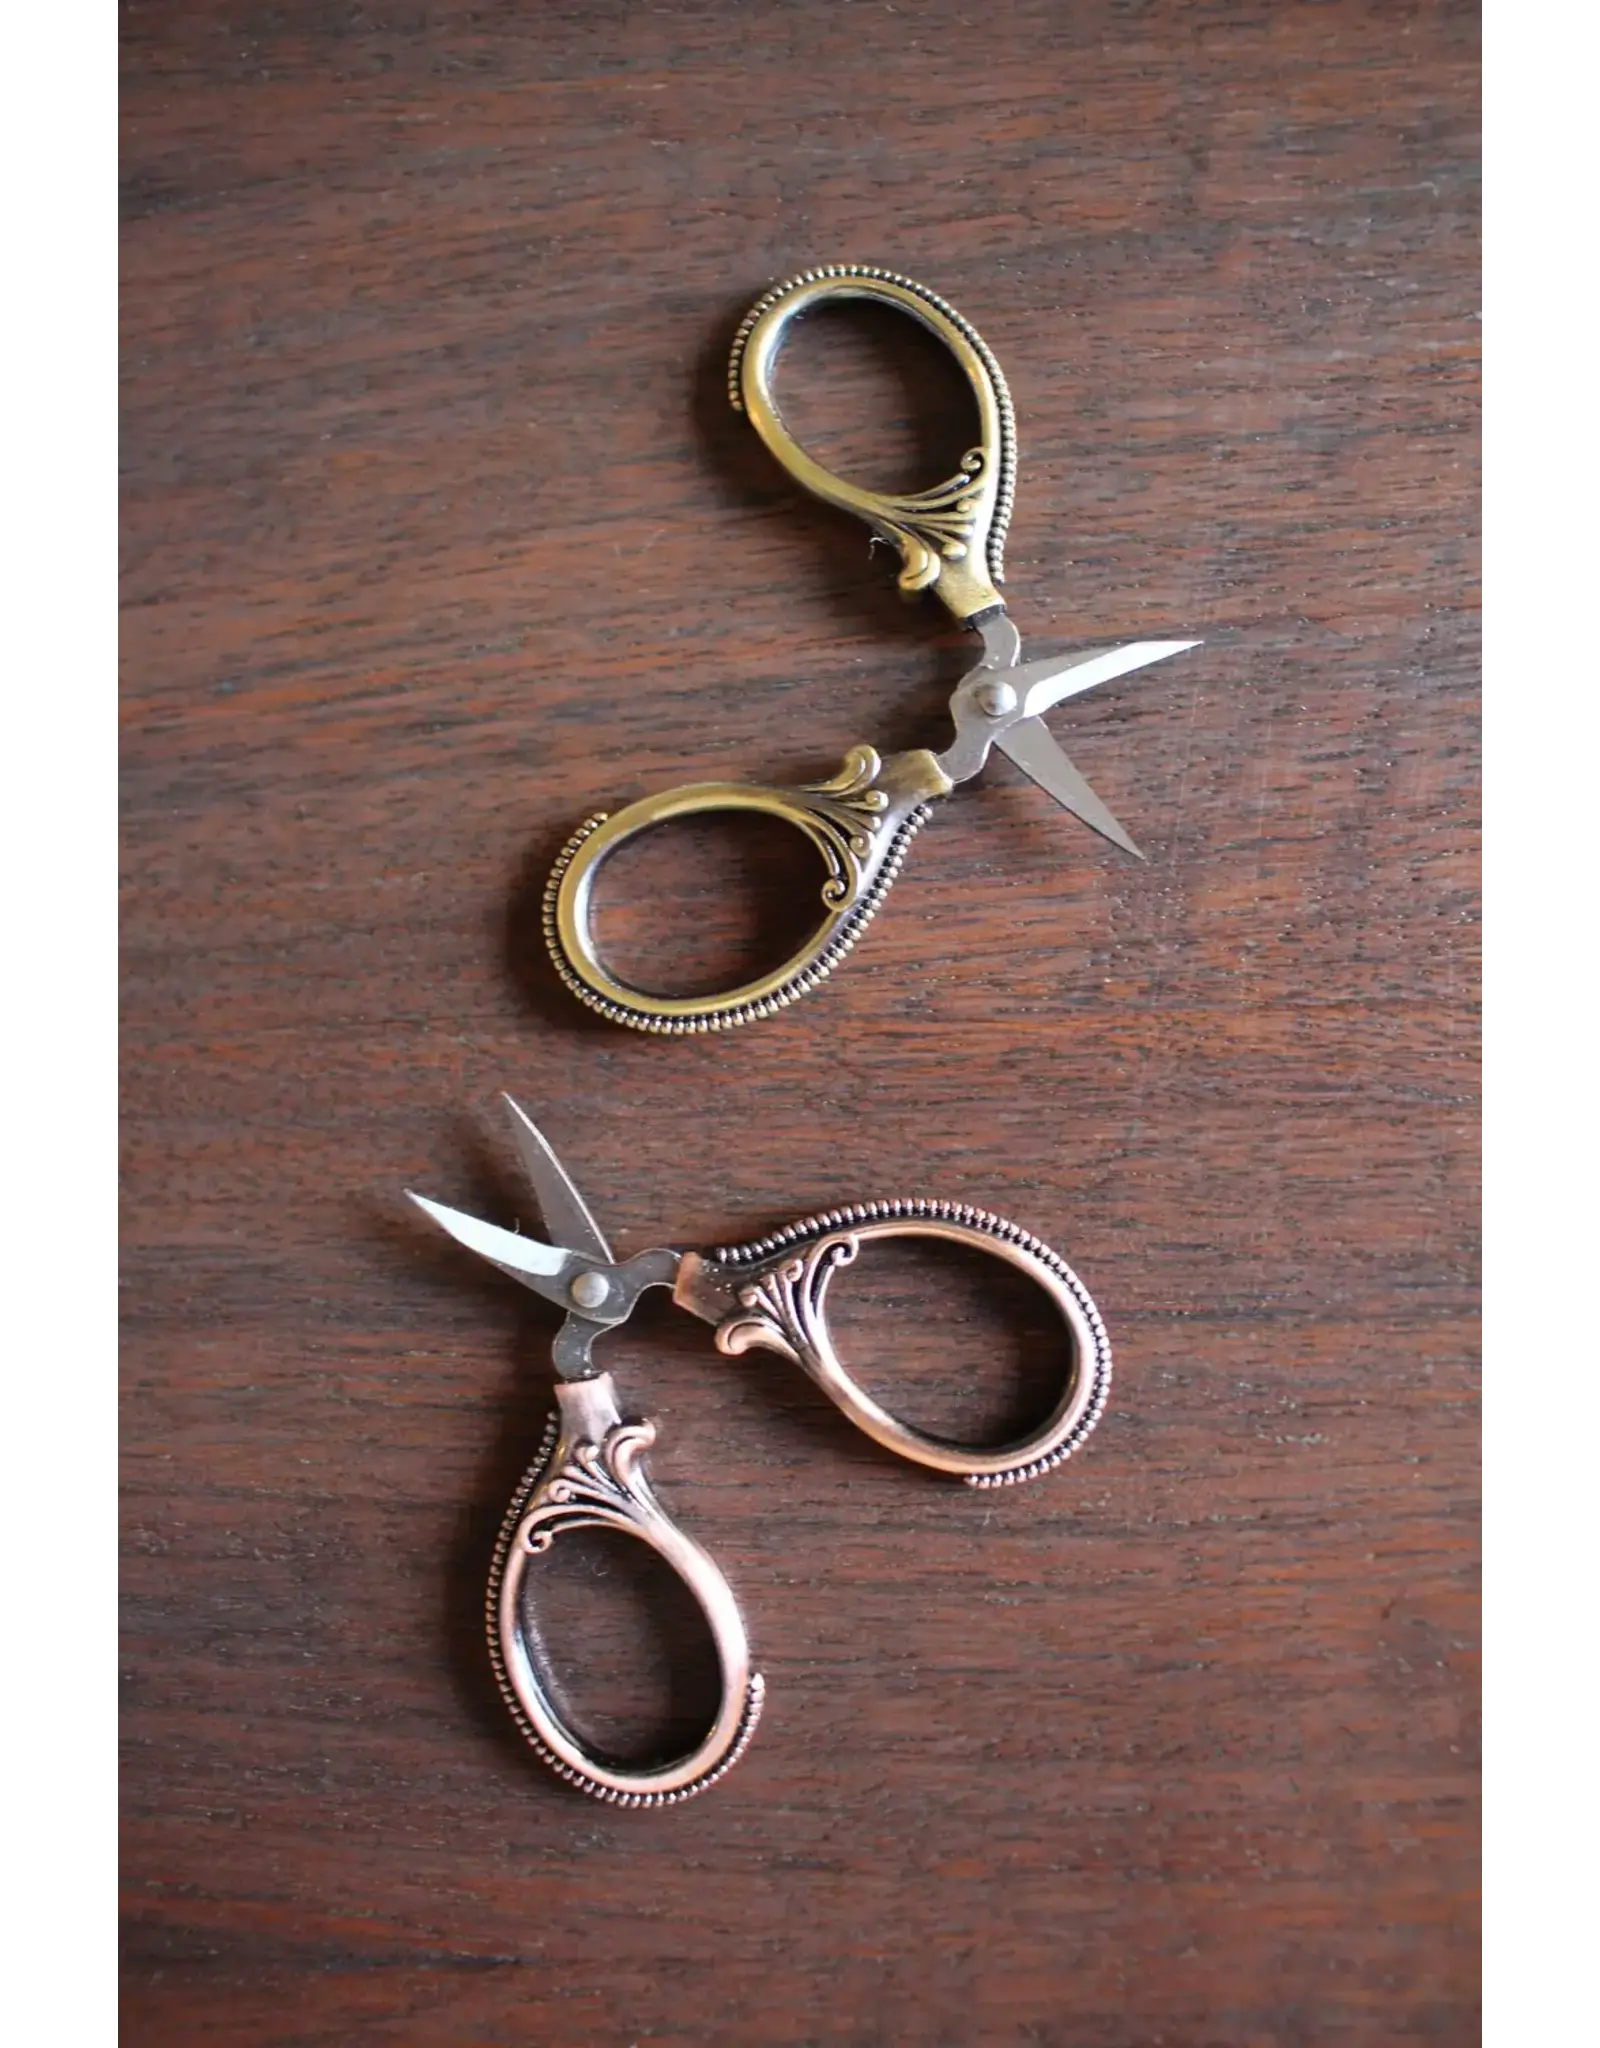 NNK Press Mini Embroidery Scissors - Antique Copper - NNK Press